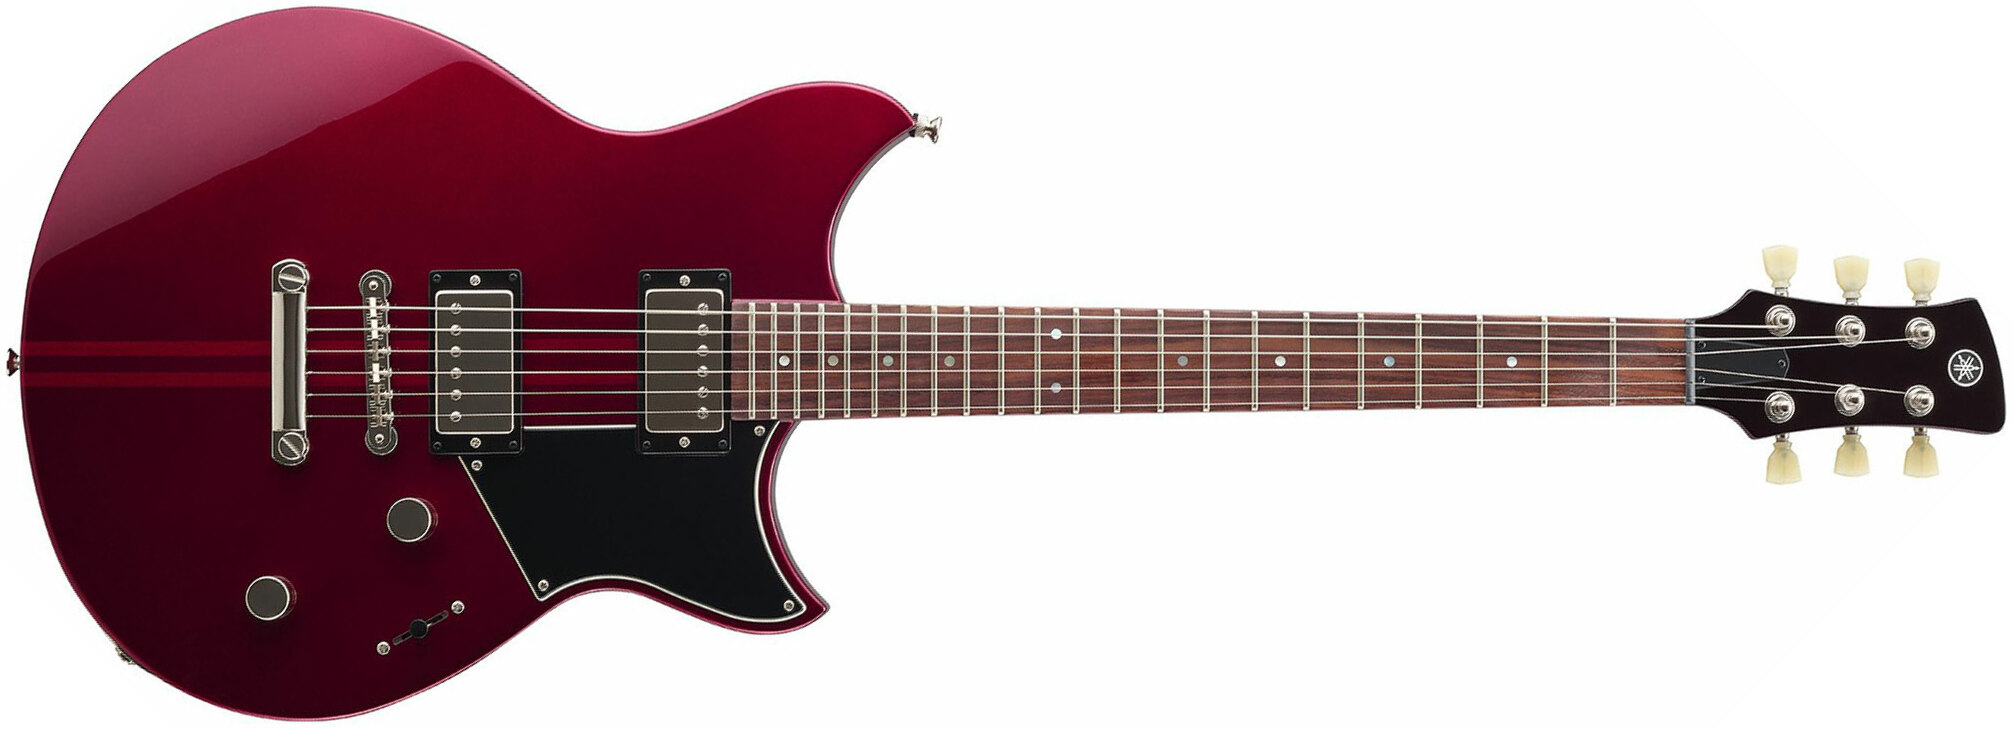 Yamaha Rse20 Revstar Element Hh Ht Rw - Red Copper - Guitarra eléctrica de doble corte. - Main picture